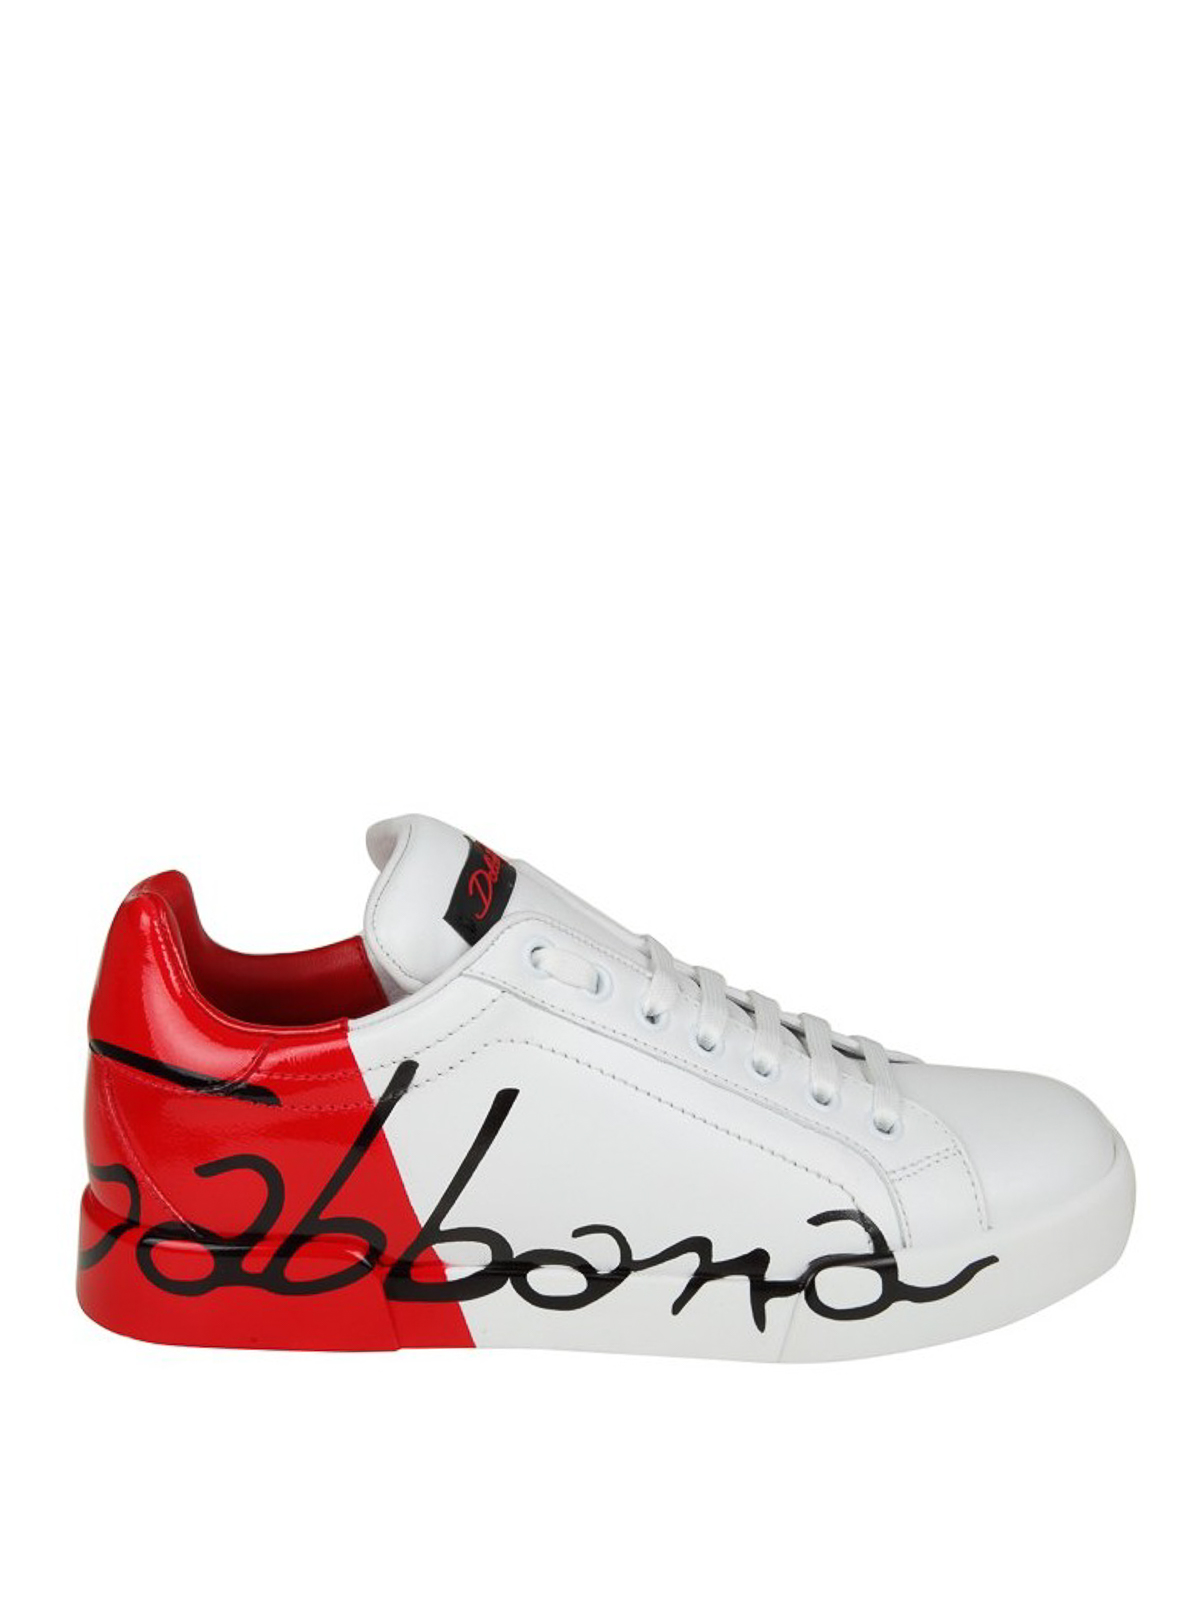 Sneakers low-top Portofino in pelleDolce & Gabbana in Pelle di colore Rosso Donna Sneakers da Sneakers Dolce & Gabbana 